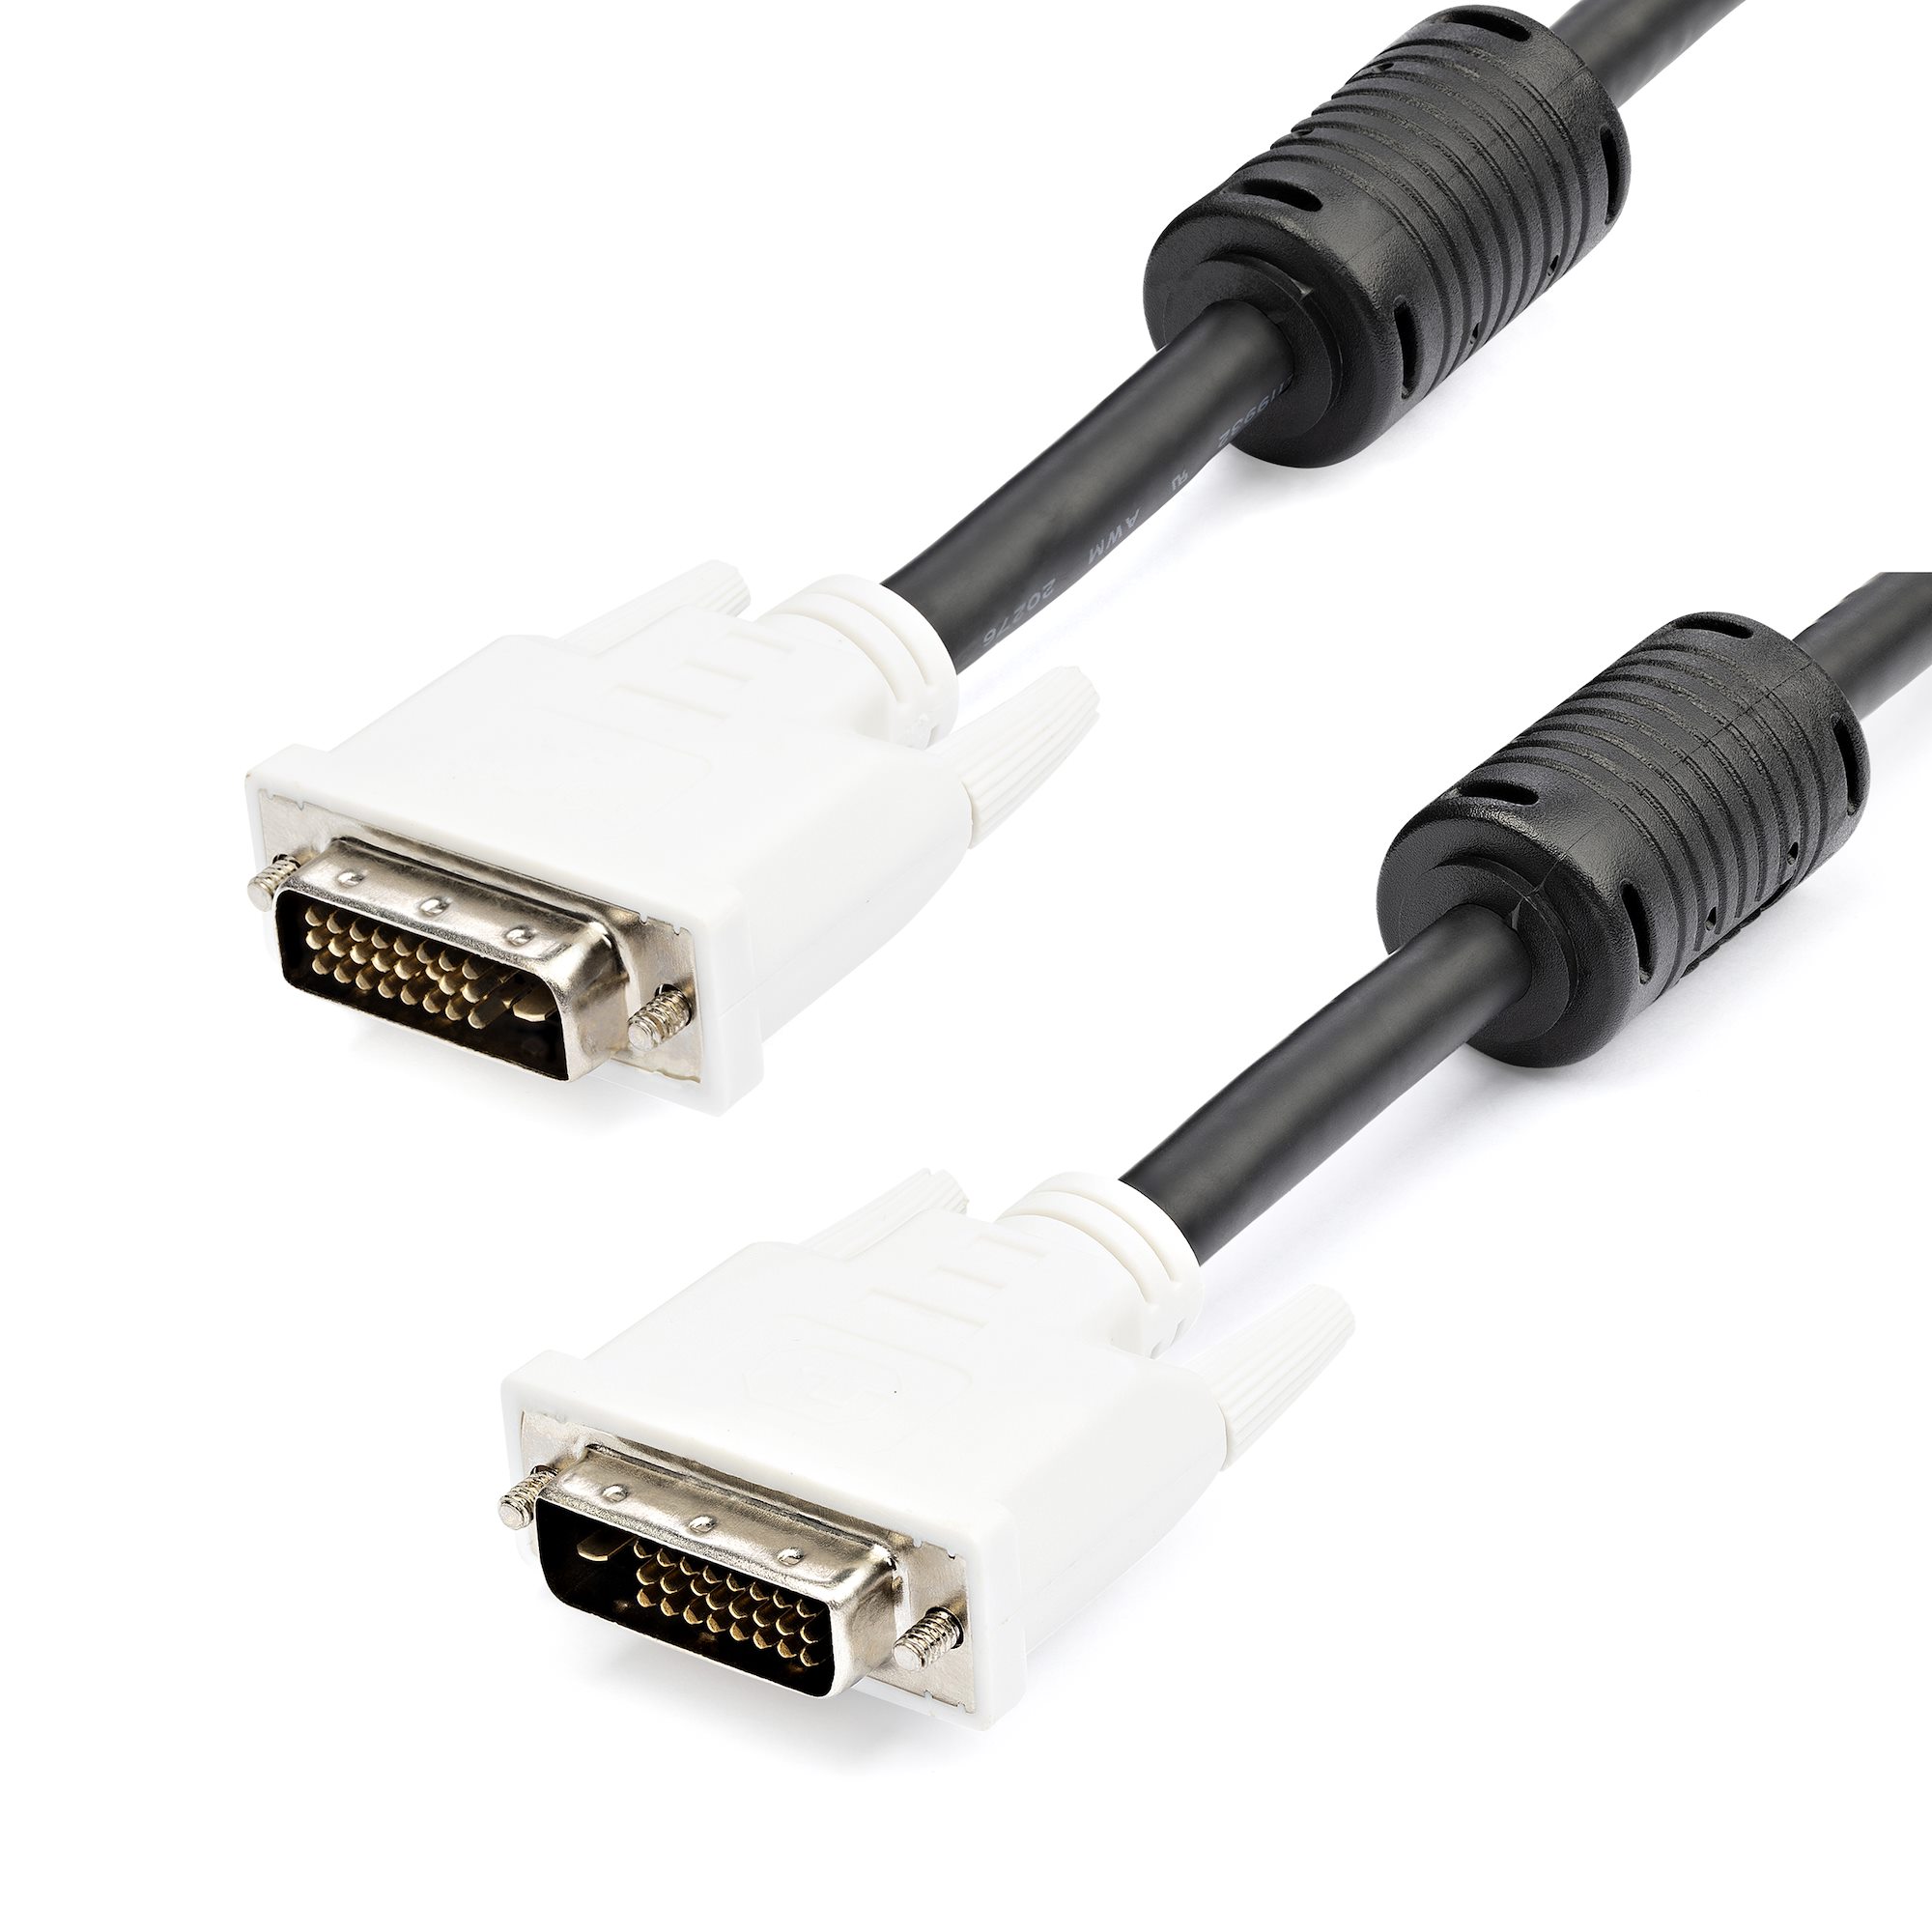 3 DVI-D Dual Link Cable - M/M Cables | StarTech.com